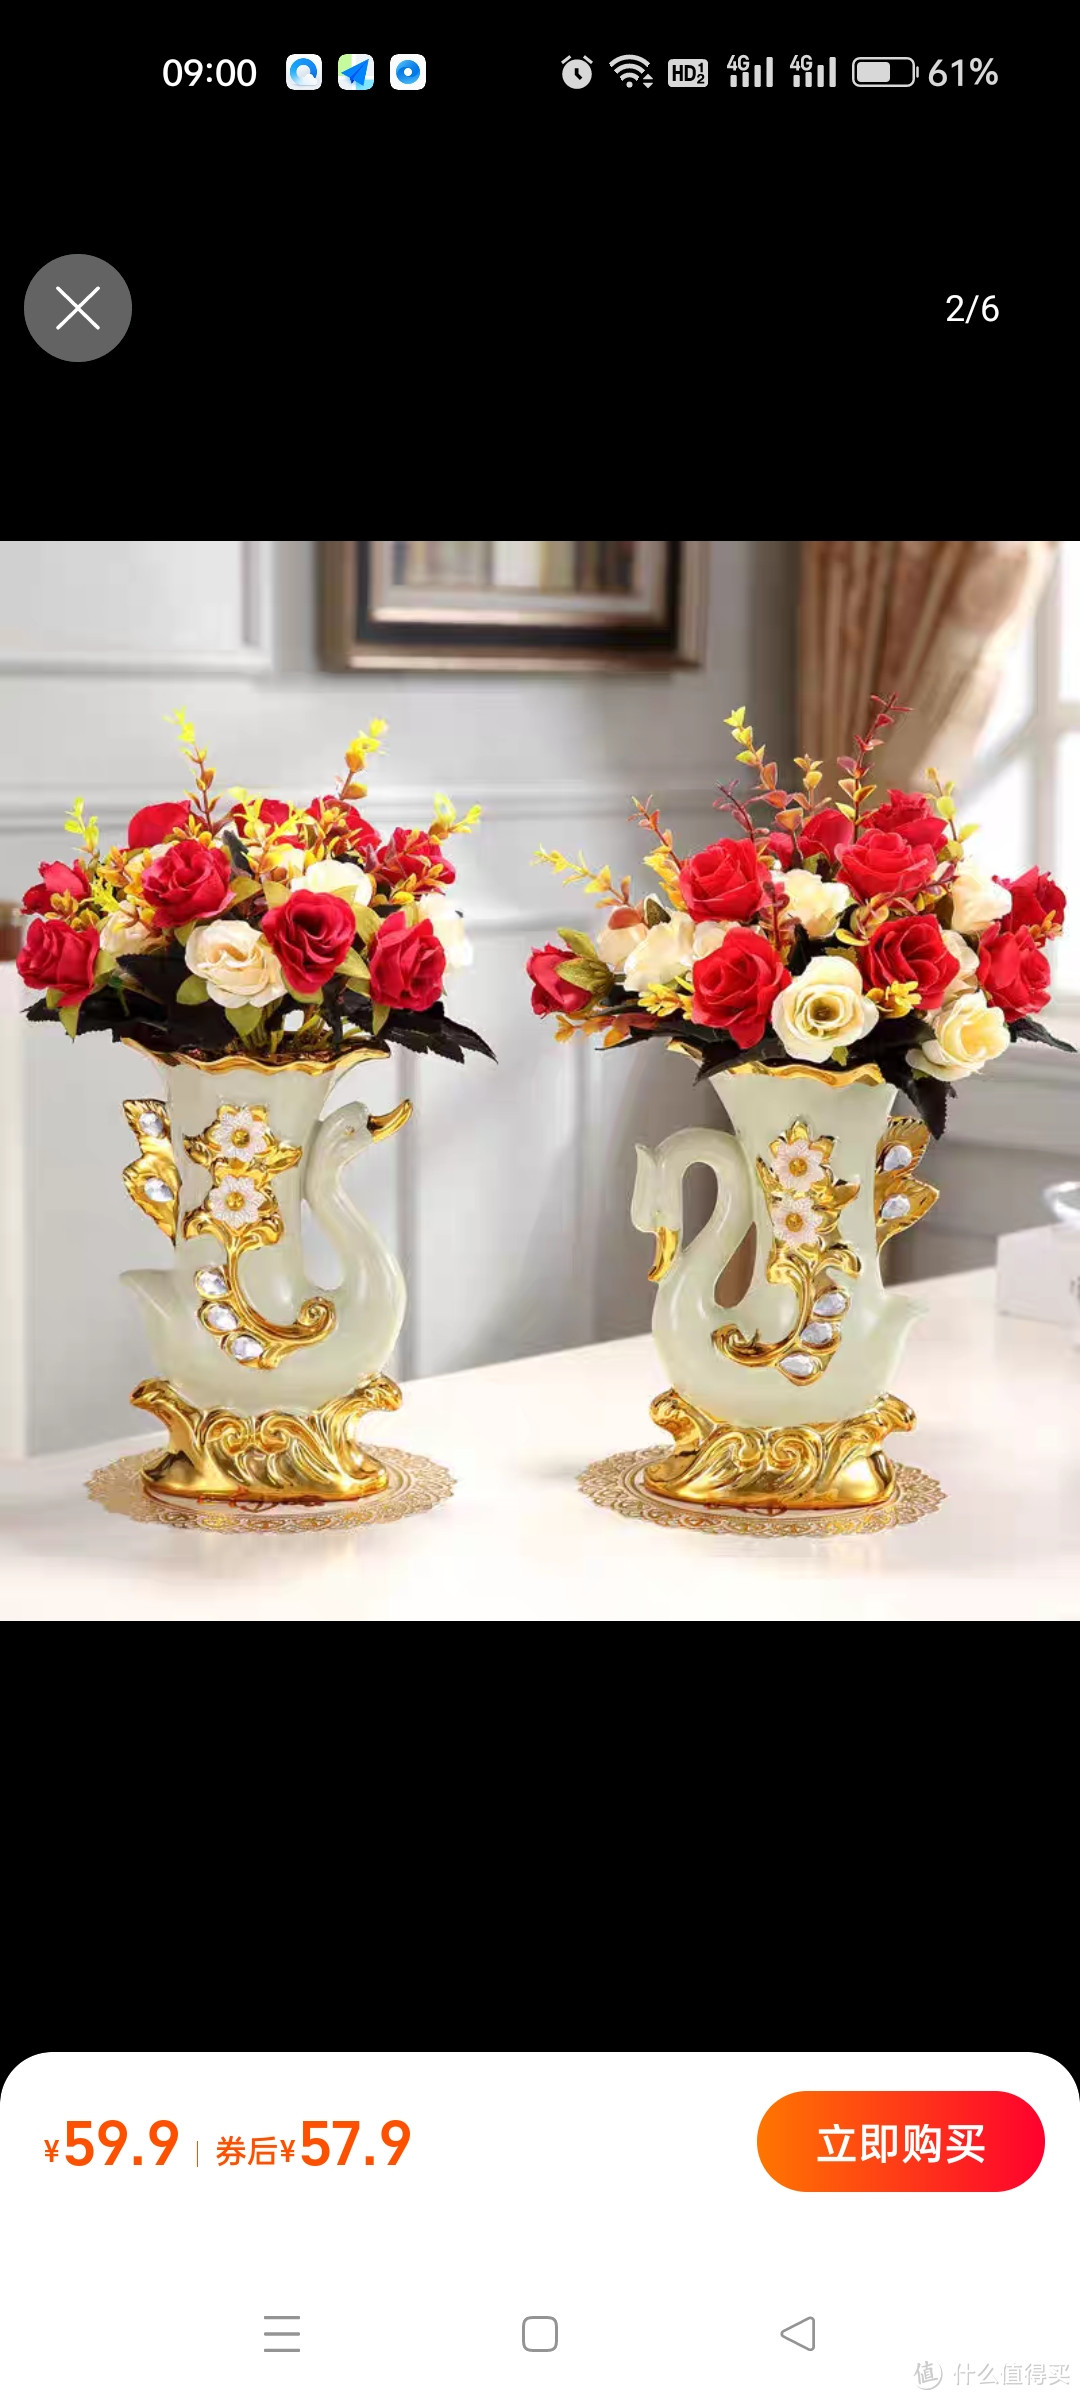 欧式陶瓷台面花瓶客厅插花电视柜摆件创意室内摆设干花花瓶装饰品